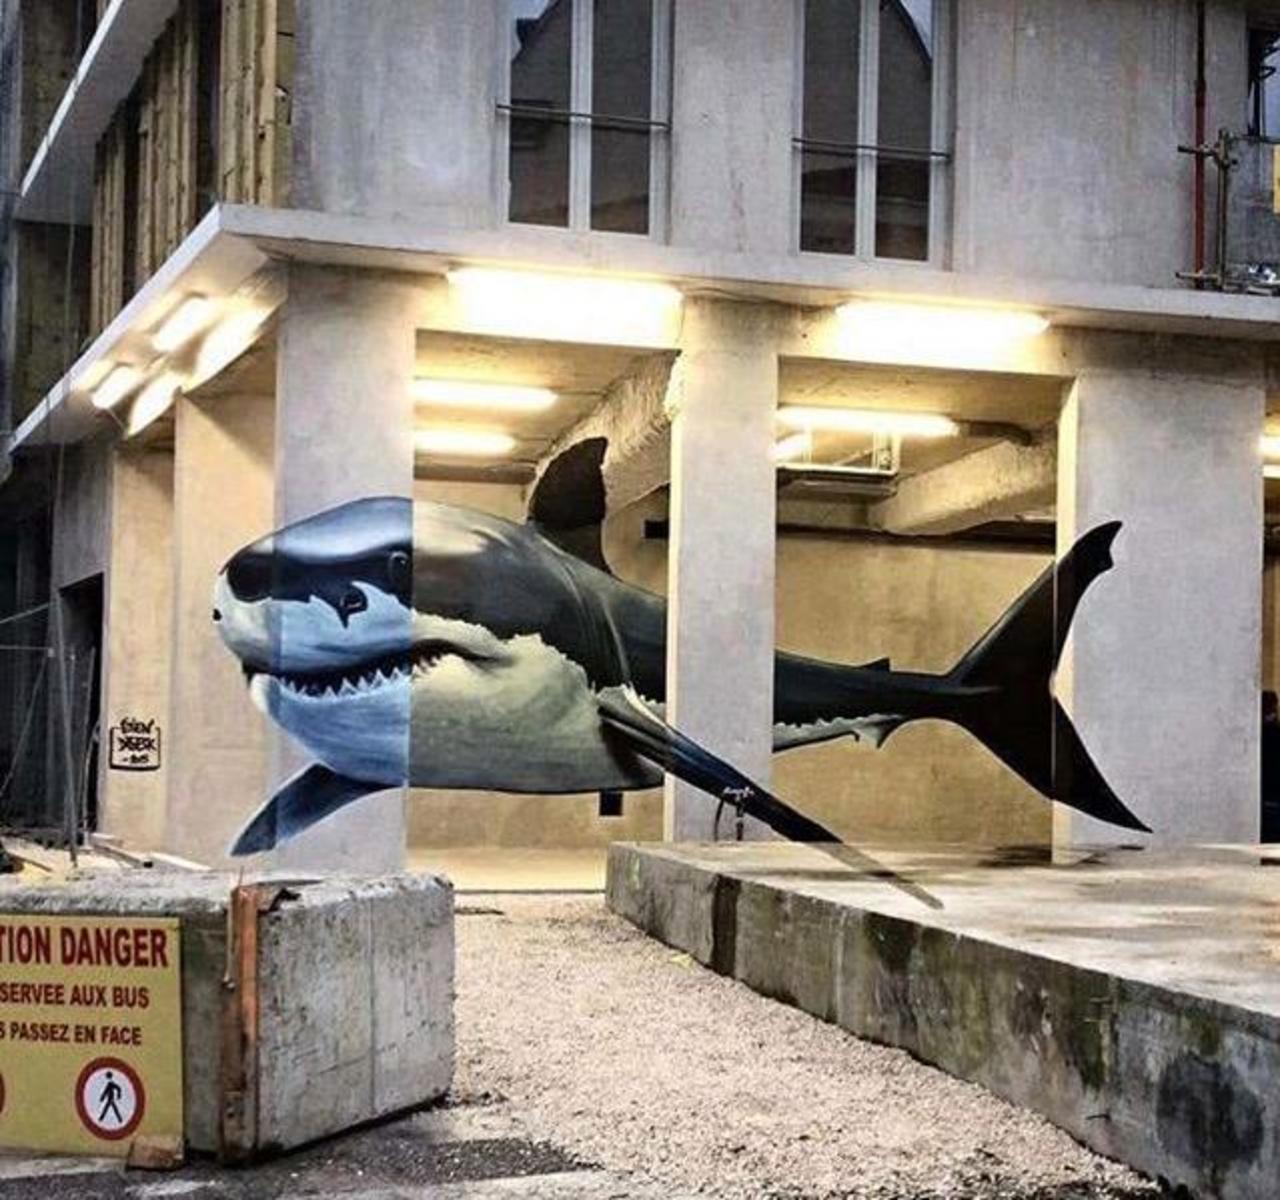 RT @GoogleStreetArt: Fantastic anamorphic Street Art by Diseck in Grenoble France 

#3D #art #graffiti #streetart http://t.co/oZTmIqs0sJ